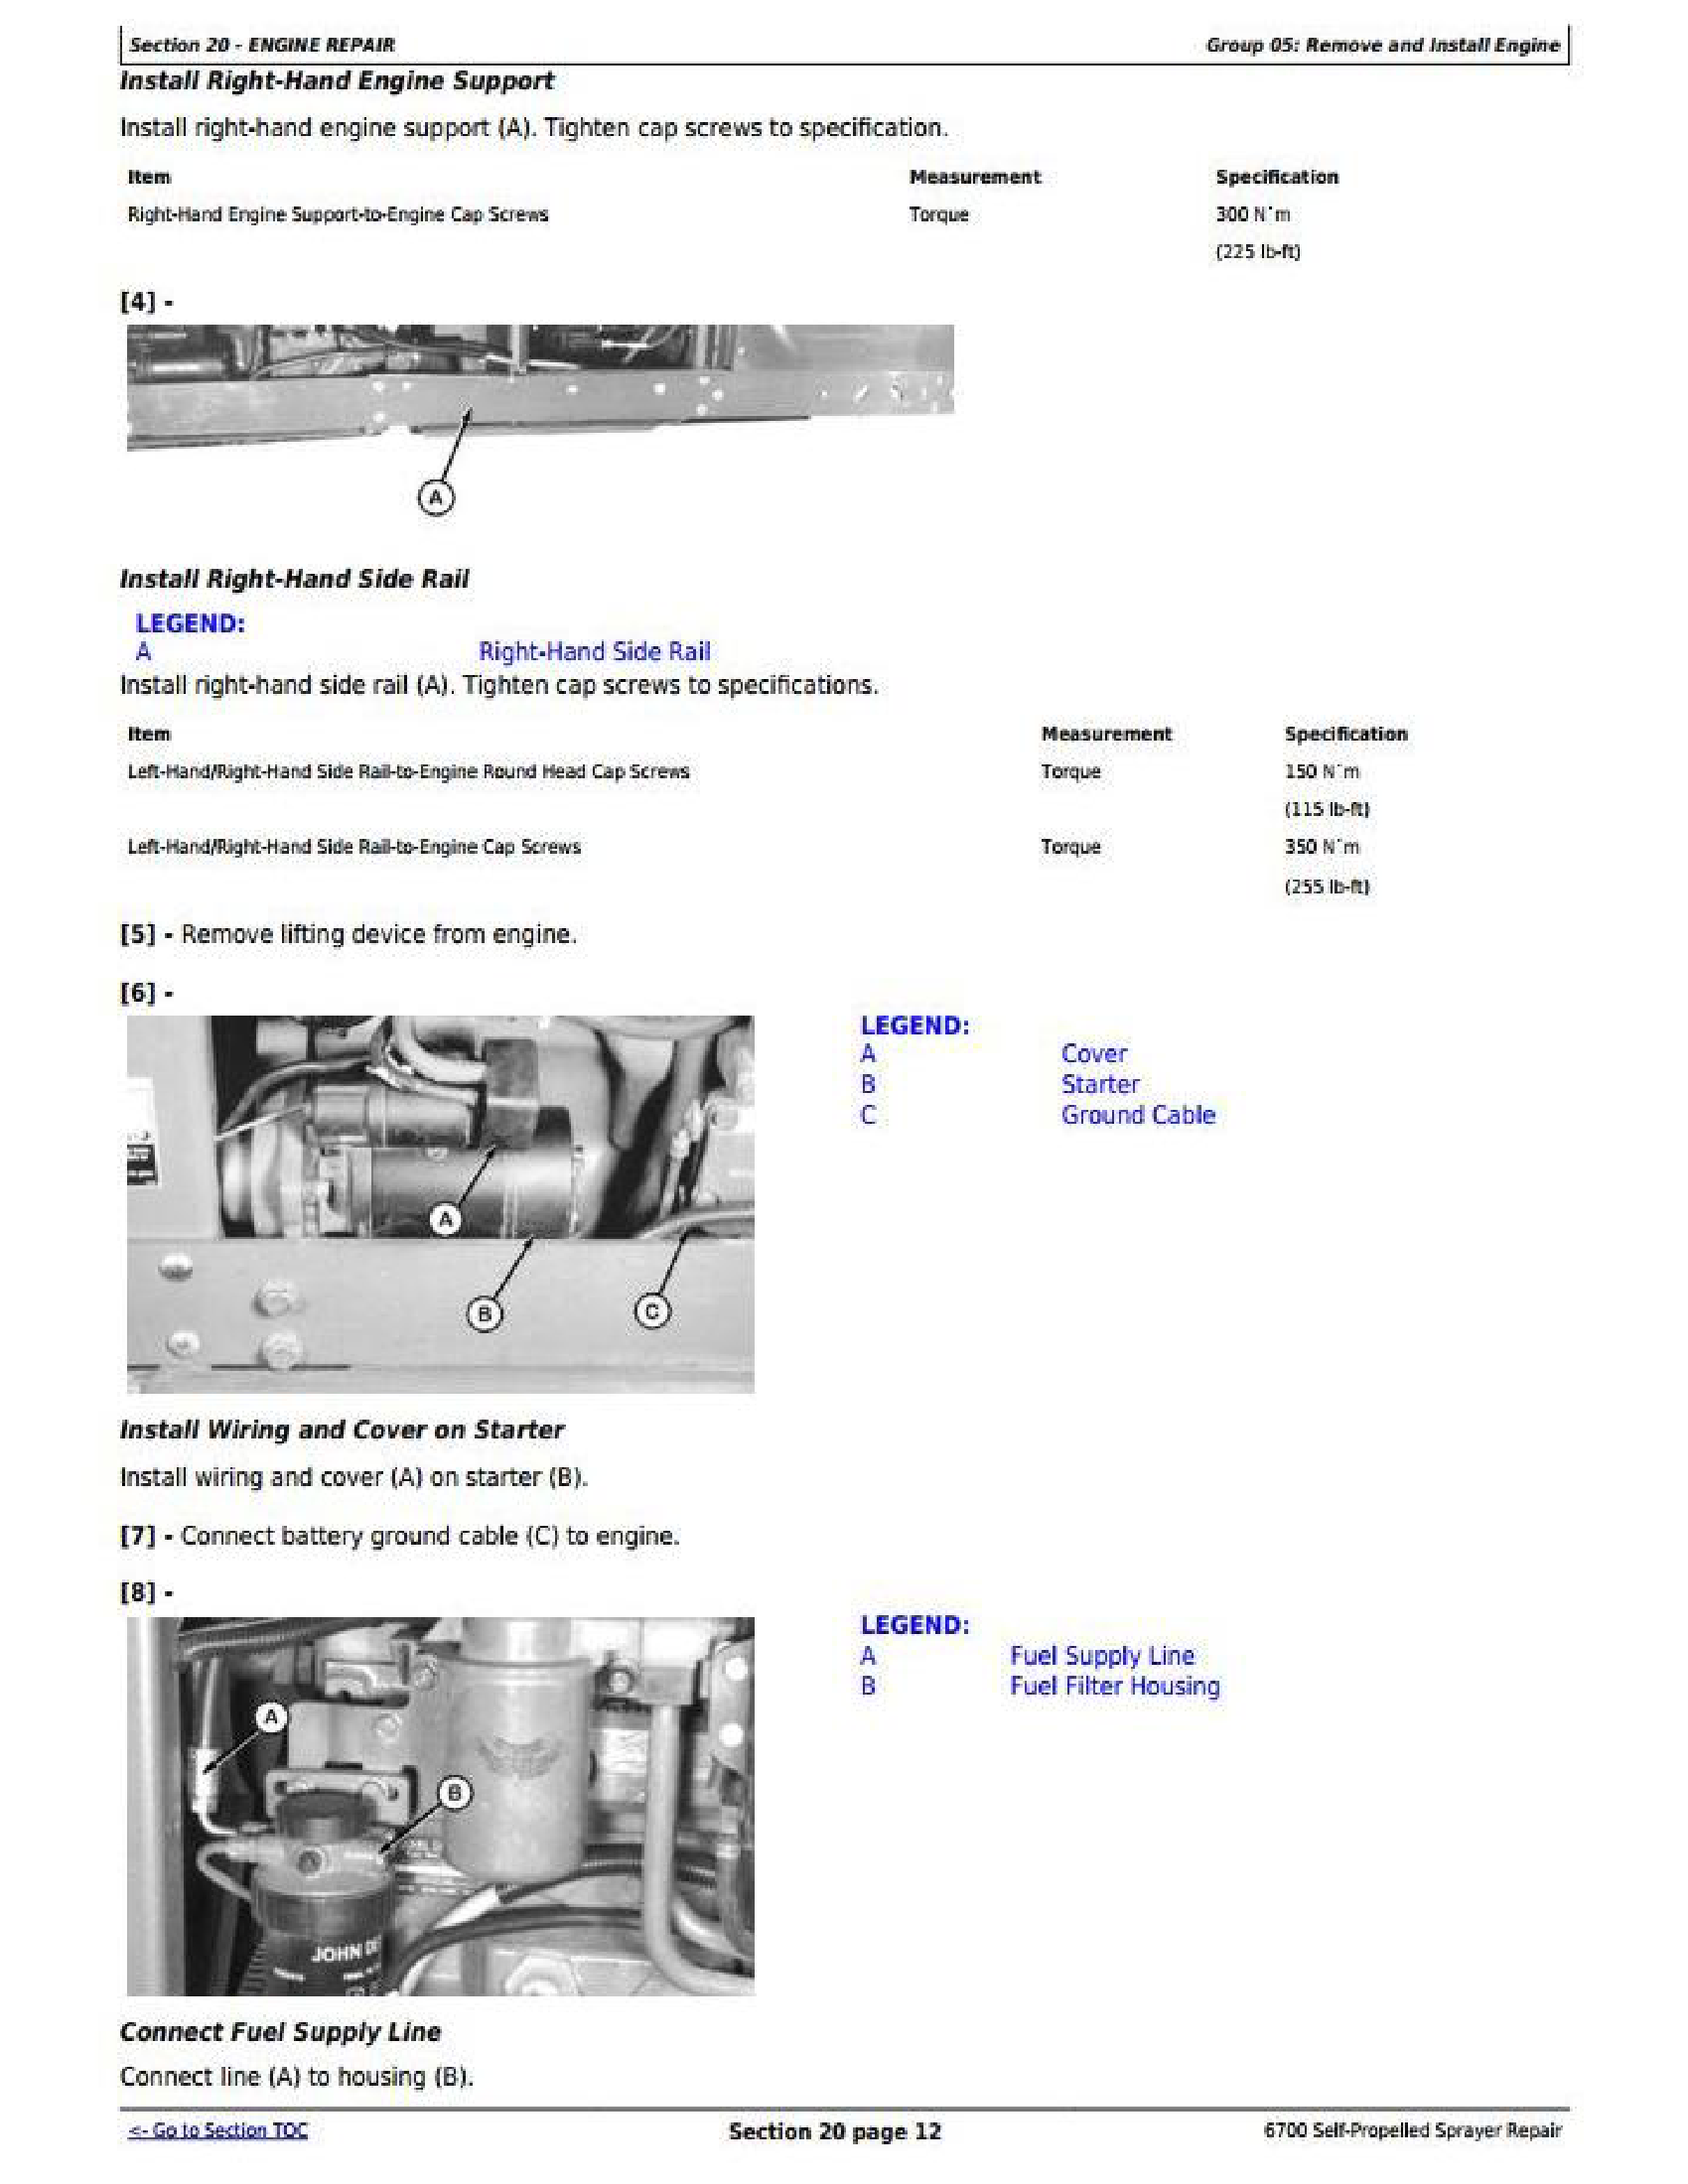 John Deere 6700 manual pdf